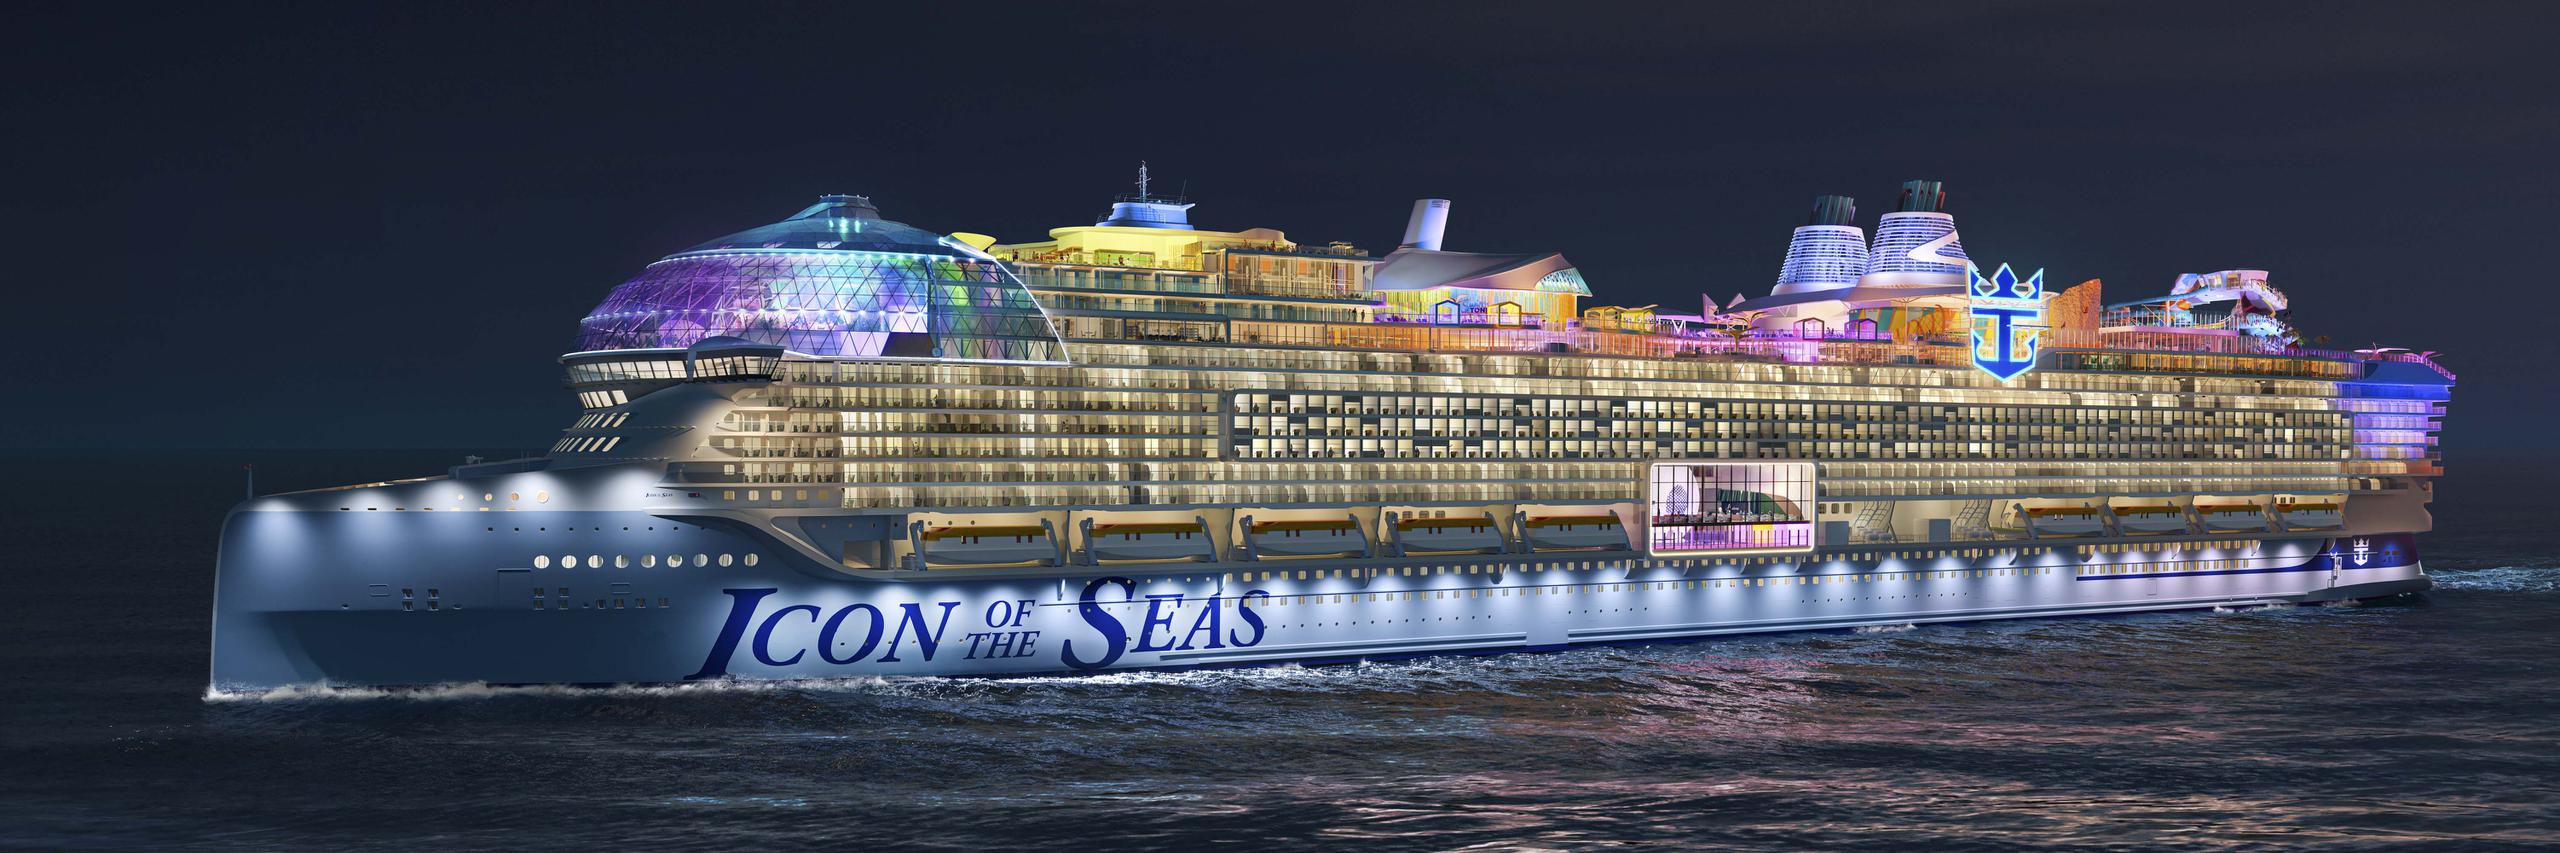 Royal Caribbean permite un vistazo virtual al crucero más grande del